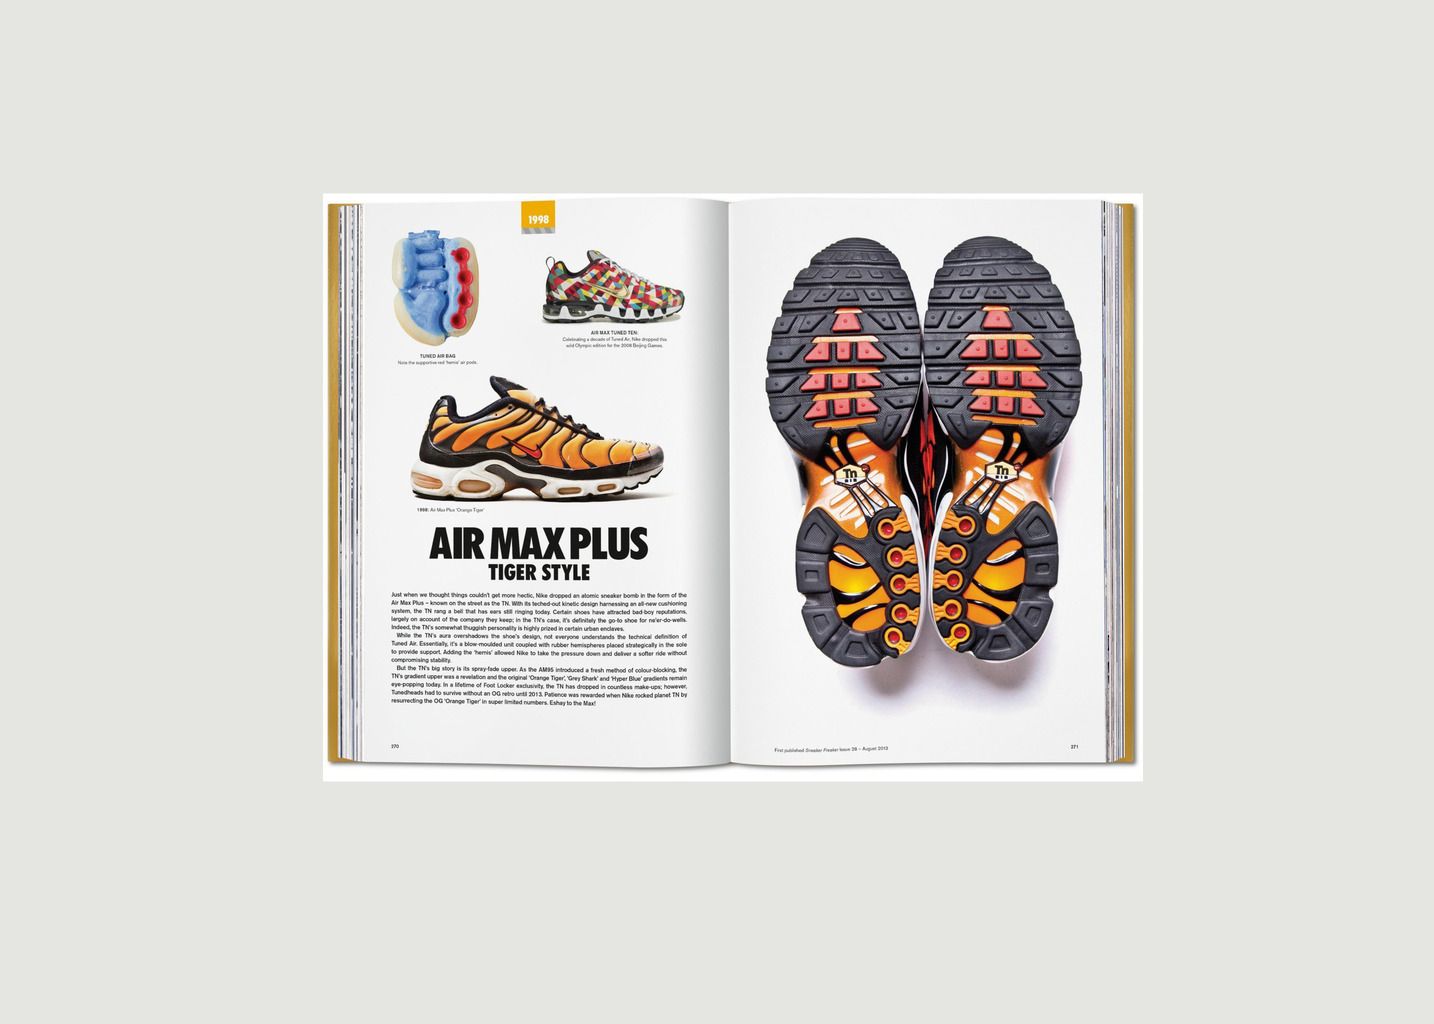 Sneaker Freaker - The Ultimate Sneaker Book - Taschen